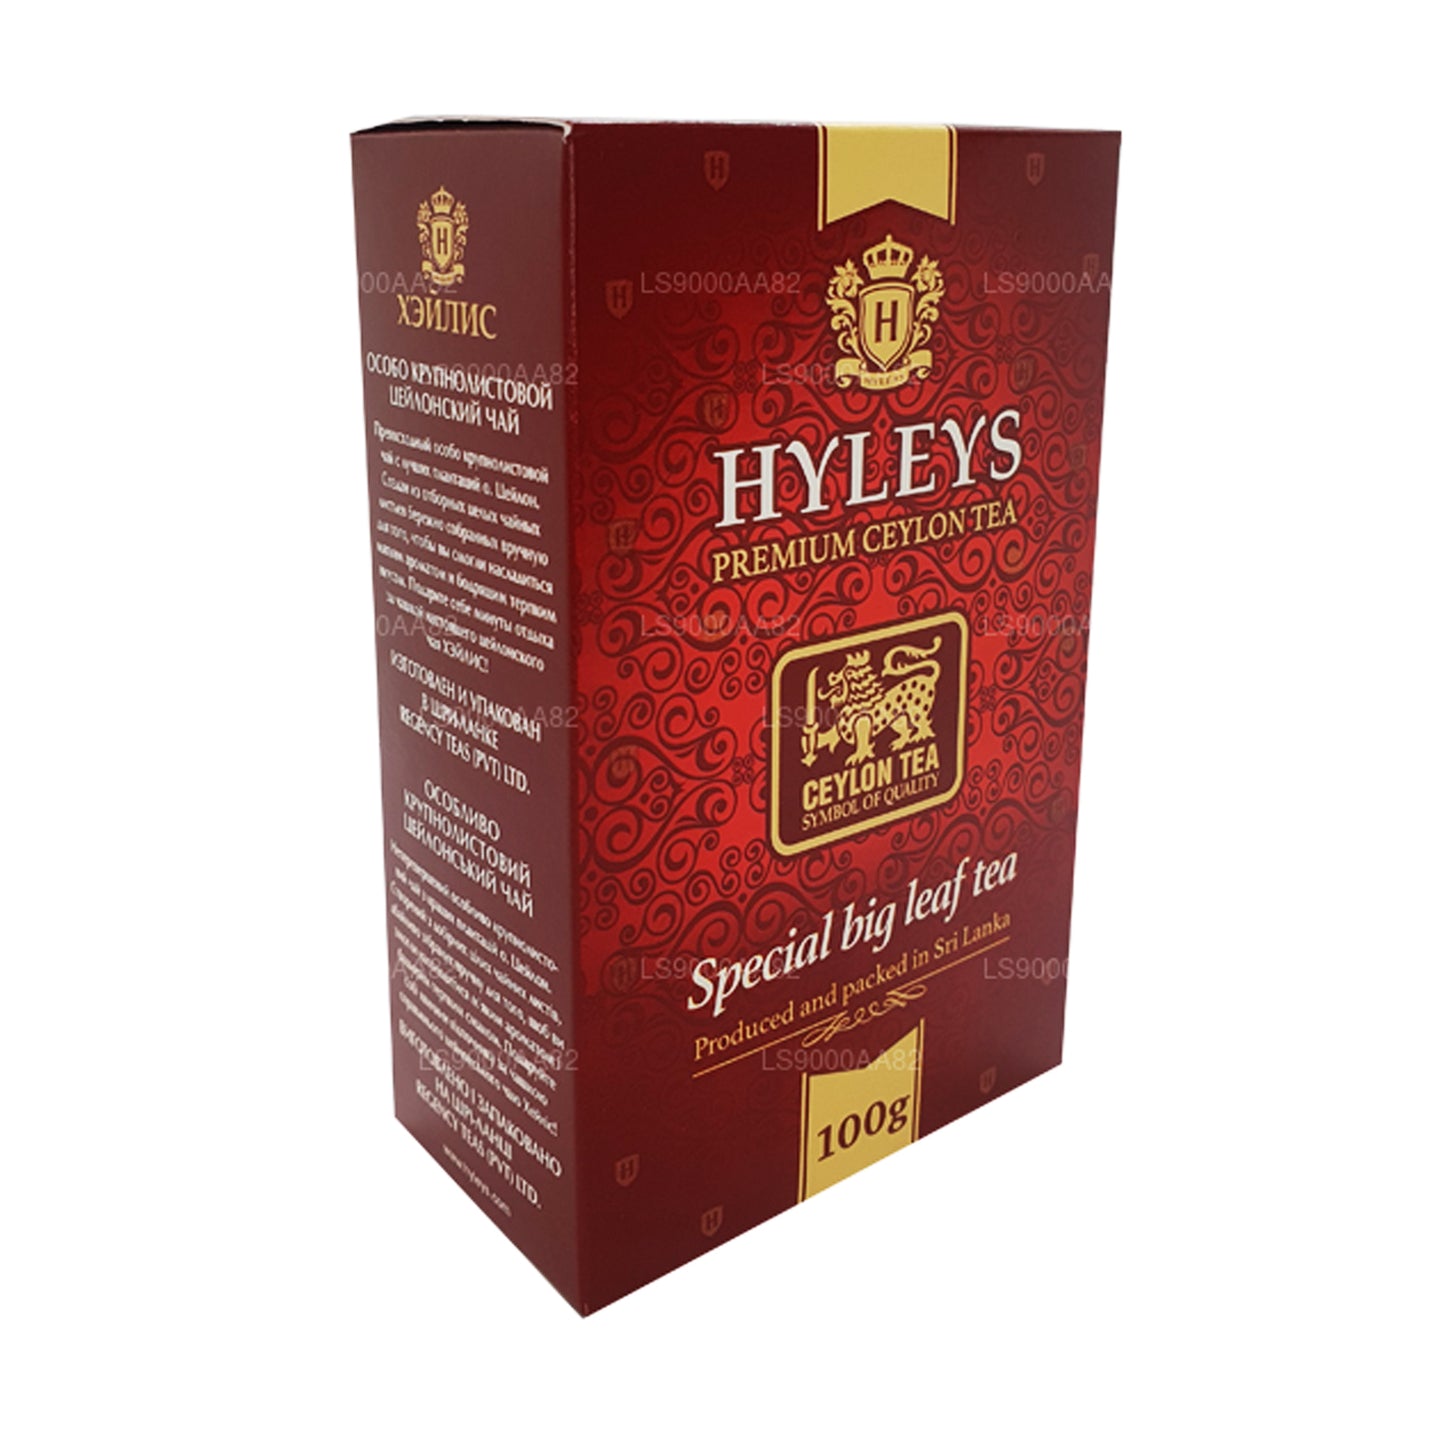 HYLEYS speciale thee met grote bladeren (100 g)